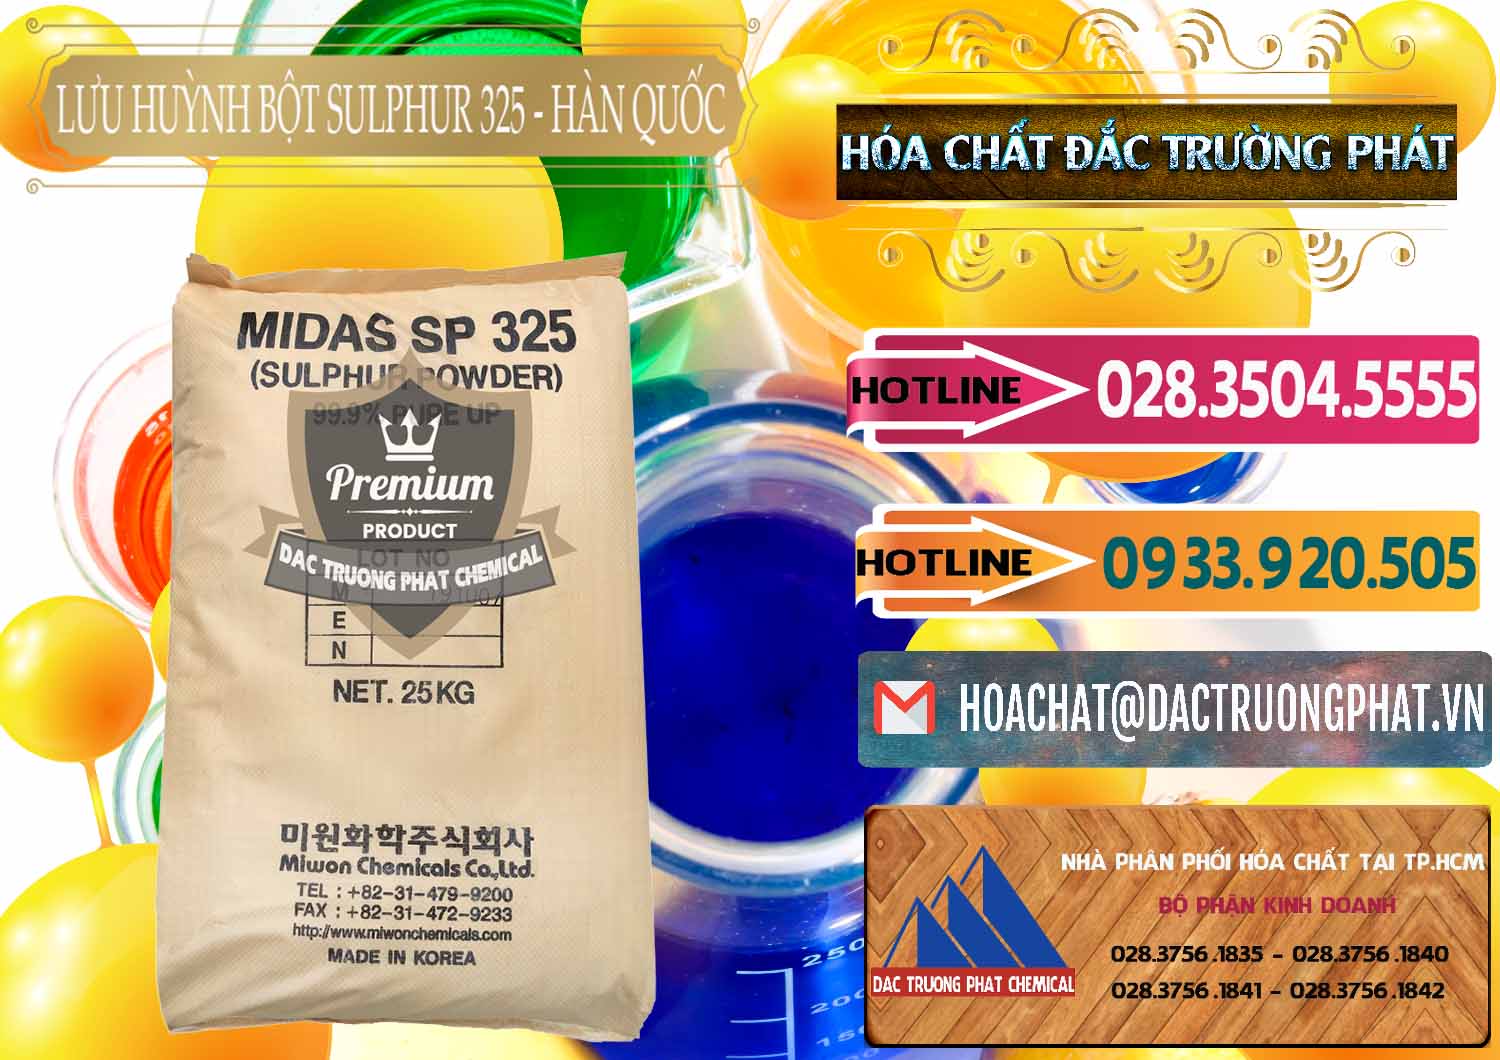 Đơn vị bán ( phân phối ) Lưu huỳnh Bột - Sulfur Powder Midas SP 325 Hàn Quốc Korea - 0198 - Công ty cung cấp - kinh doanh hóa chất tại TP.HCM - dactruongphat.vn